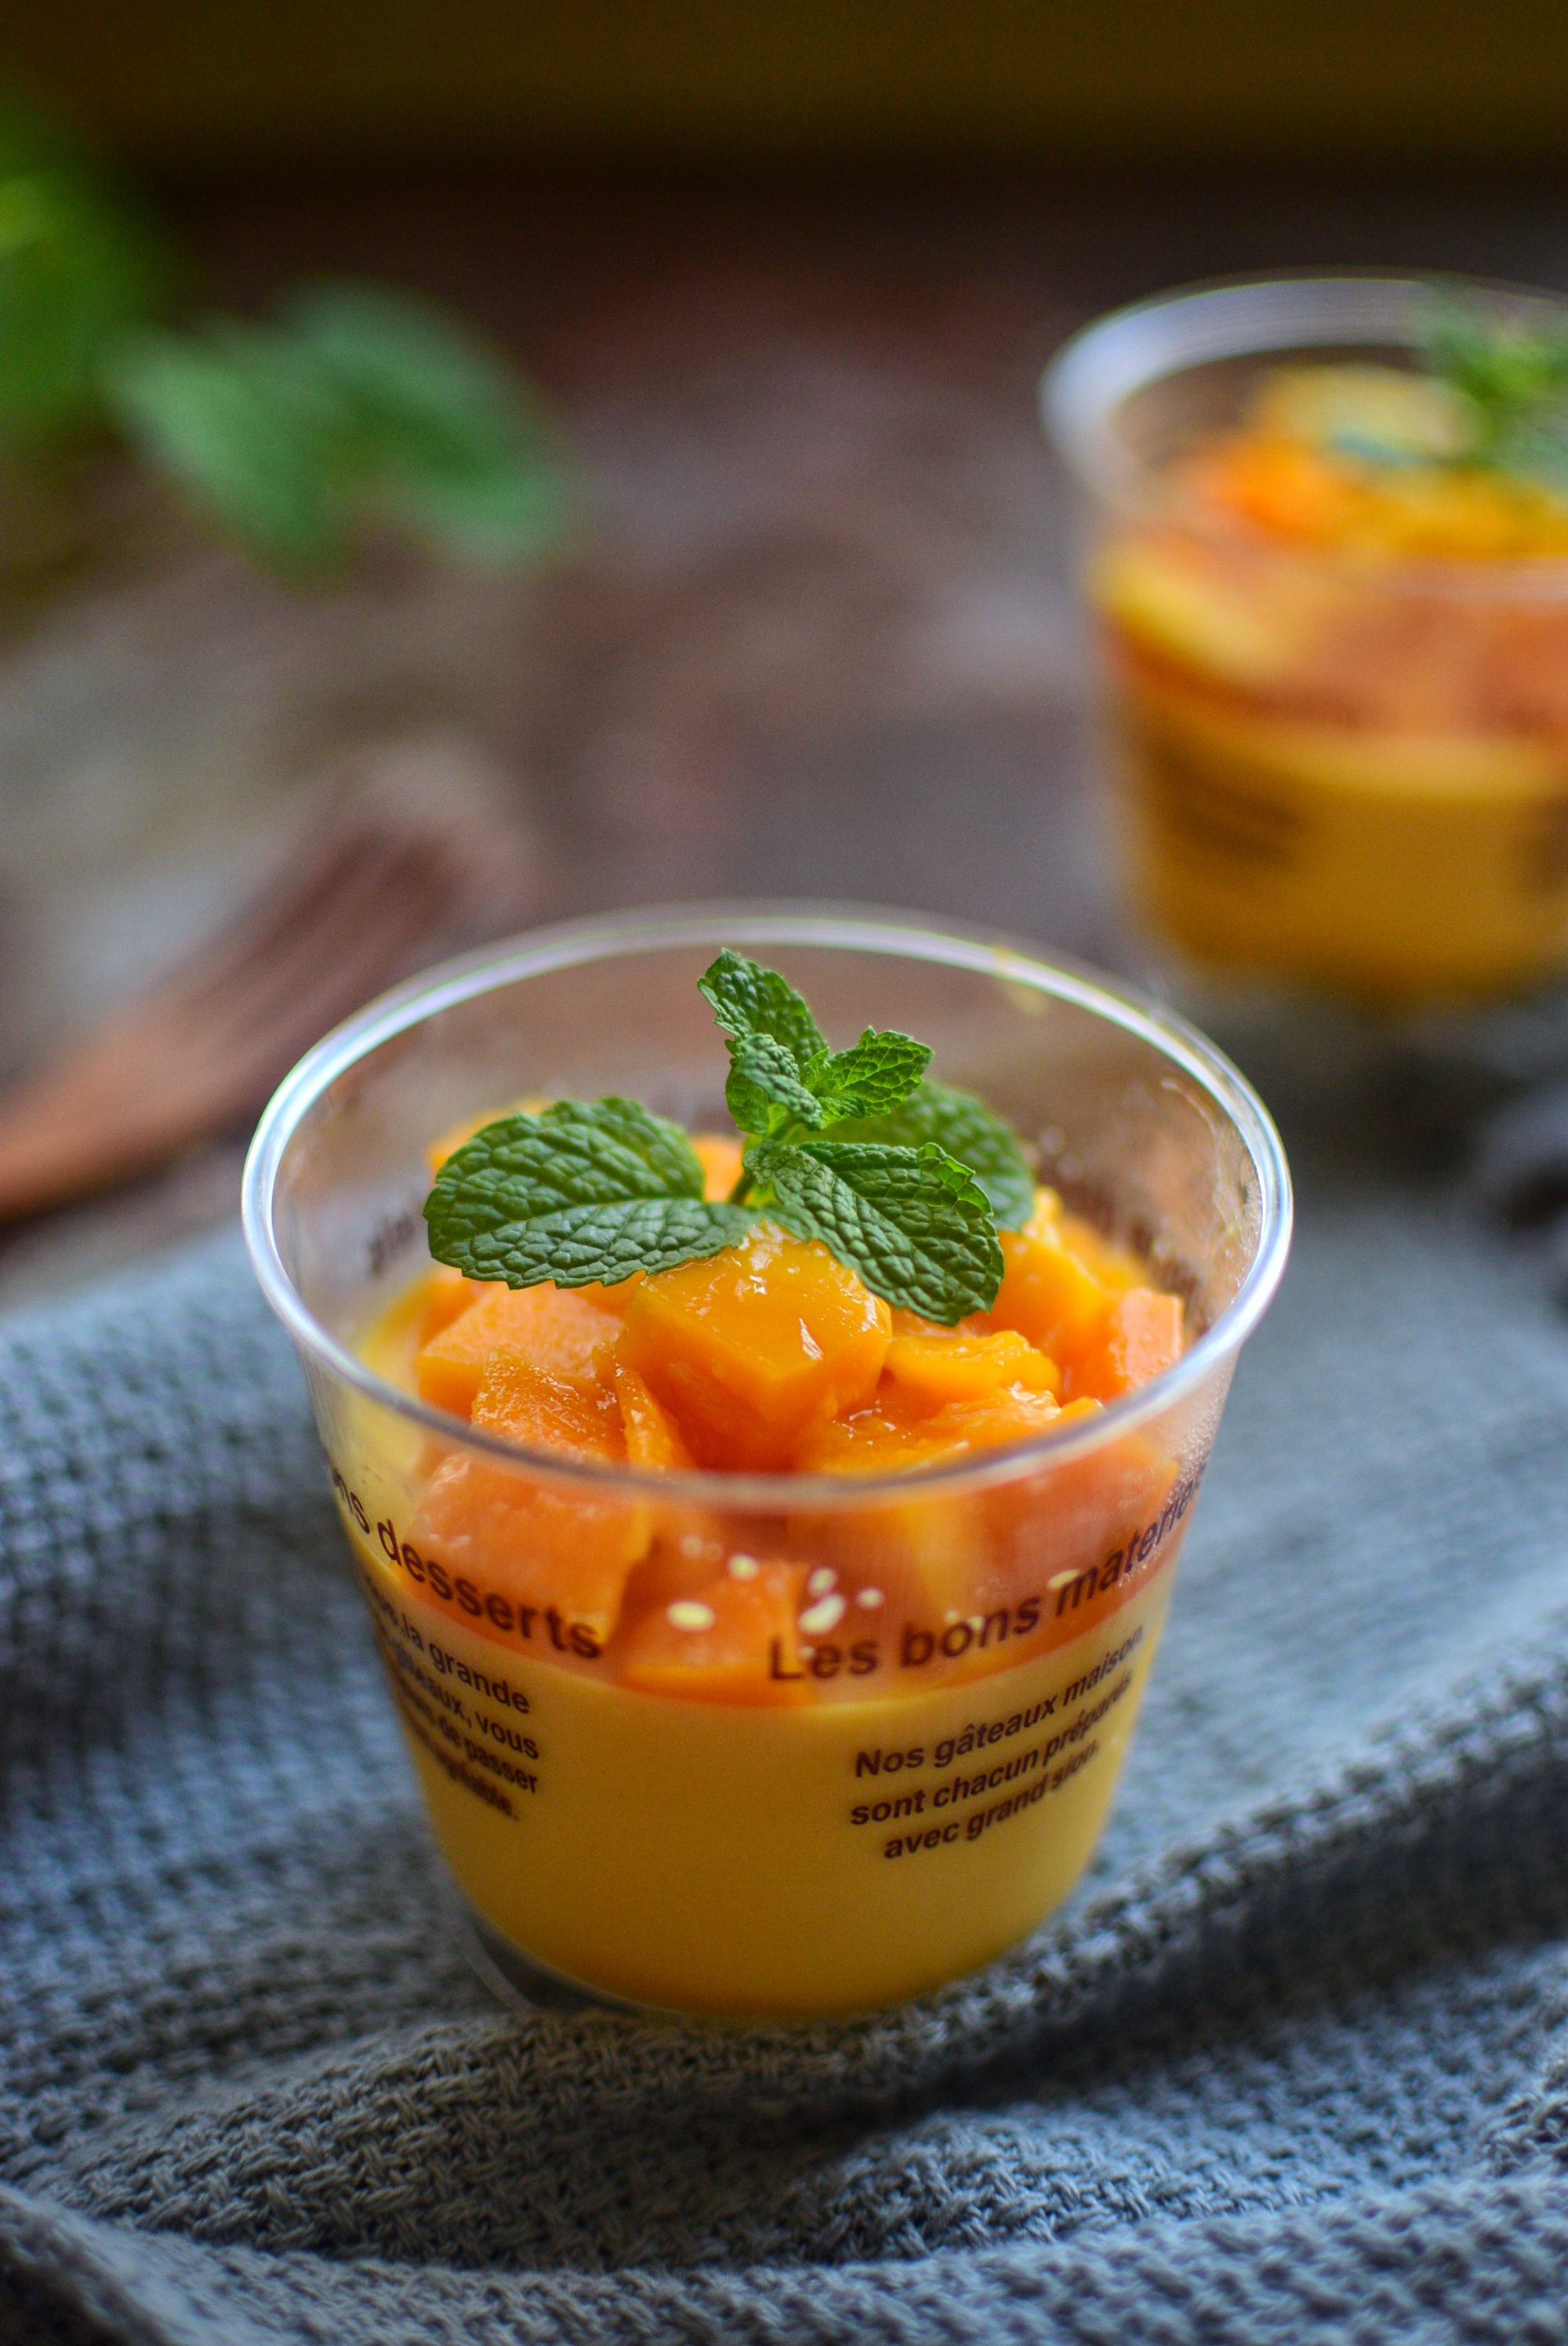 夏天就爱吃冰凉爽口的芒果布丁,一口一口软嫩香甜,做法太简单了